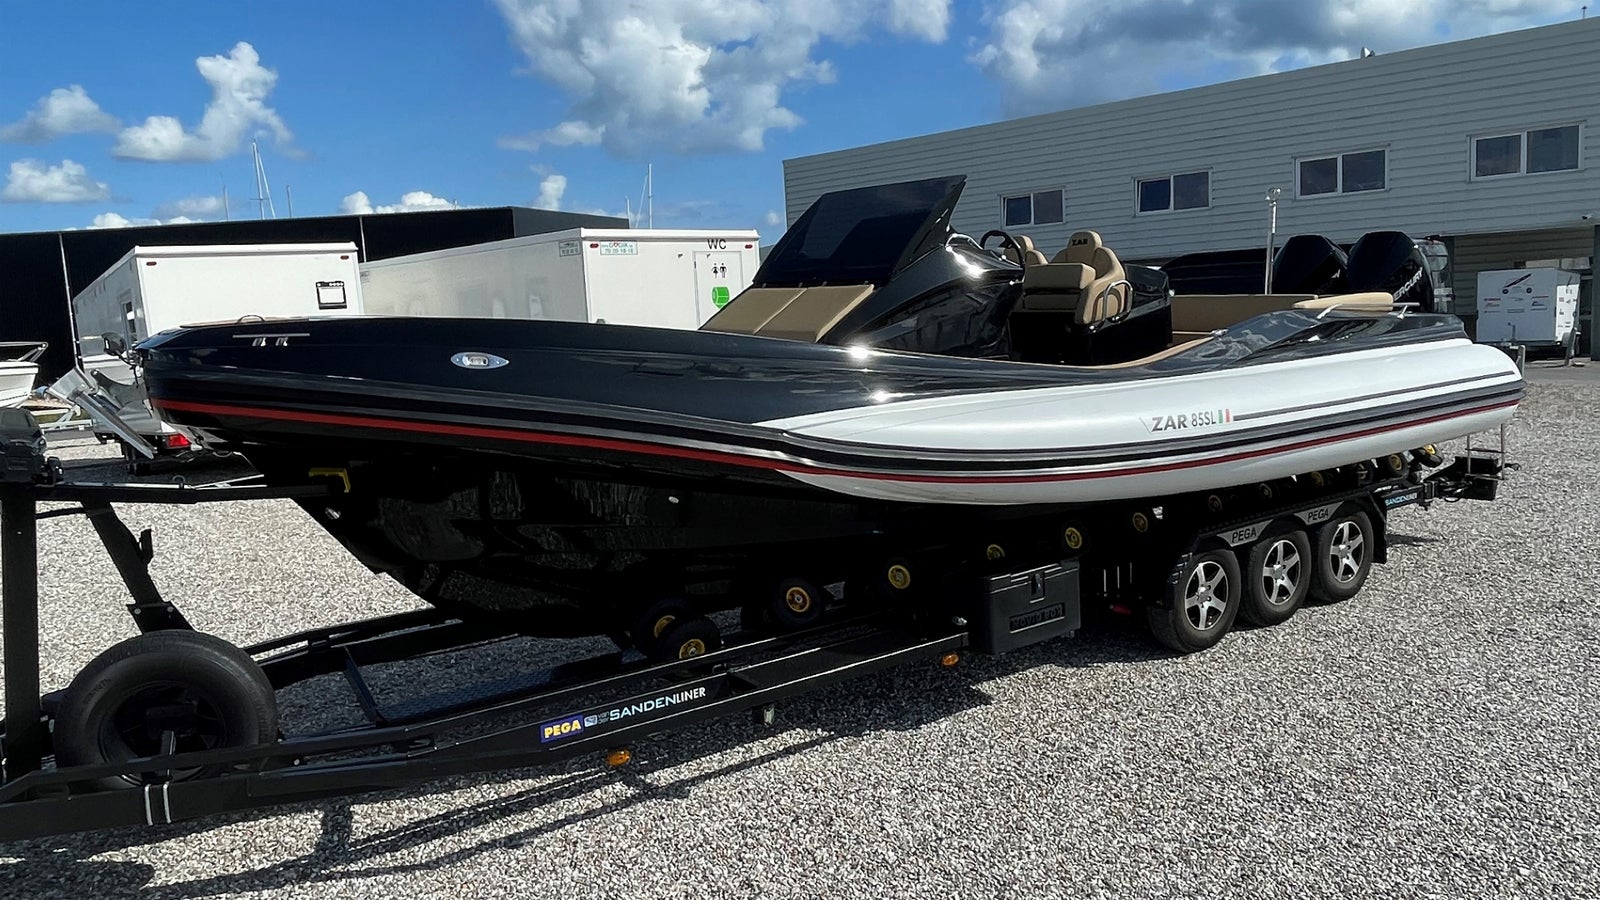 Motorbåd Zar Formenti 85SL 2021